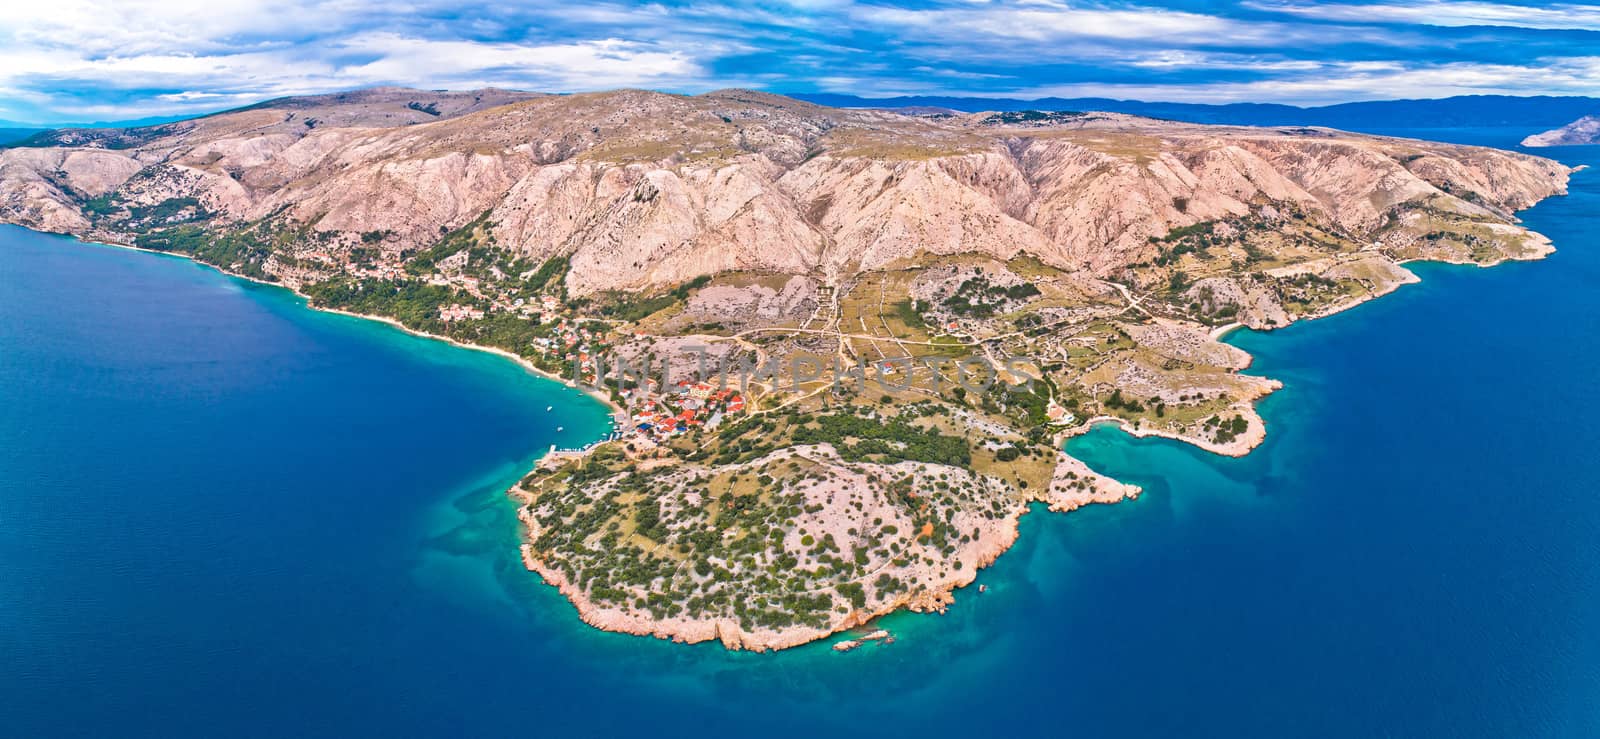 Stara Baska. Aerial panoramic view of Stara Baska village and stone desert landscape of Krk island, Kvarner bay of Croatia